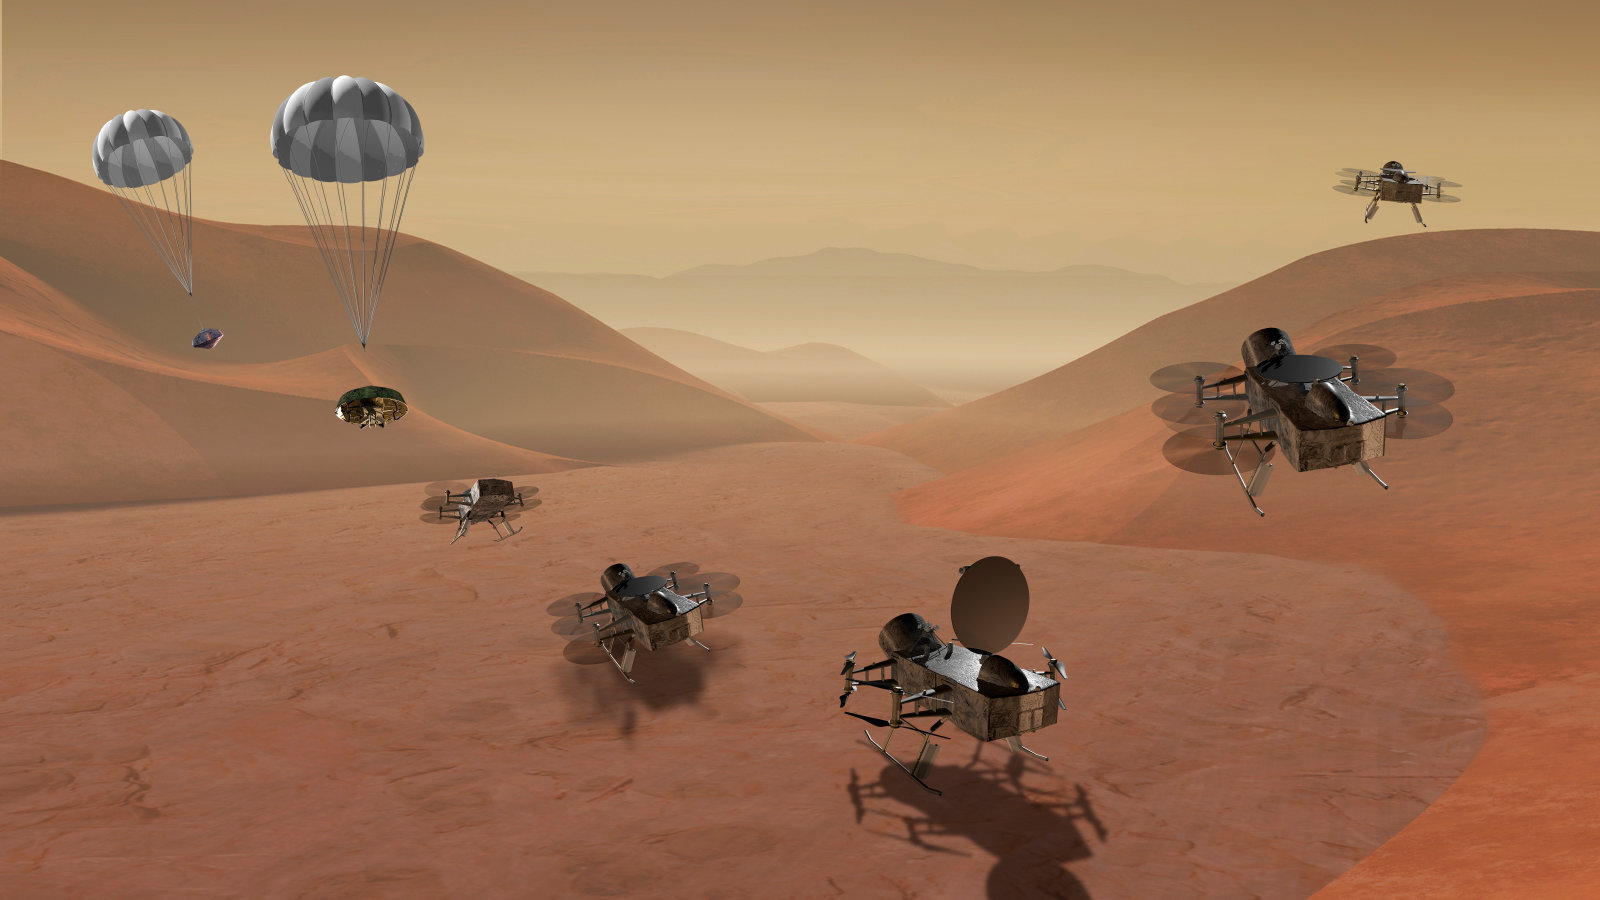 Με την αποστολή Dragonfly, η NASA θα στείλει ένα ρομποτικό drone στον Τιτάνα, τον μεγαλύτερο δορυφόρο του Κρόνου